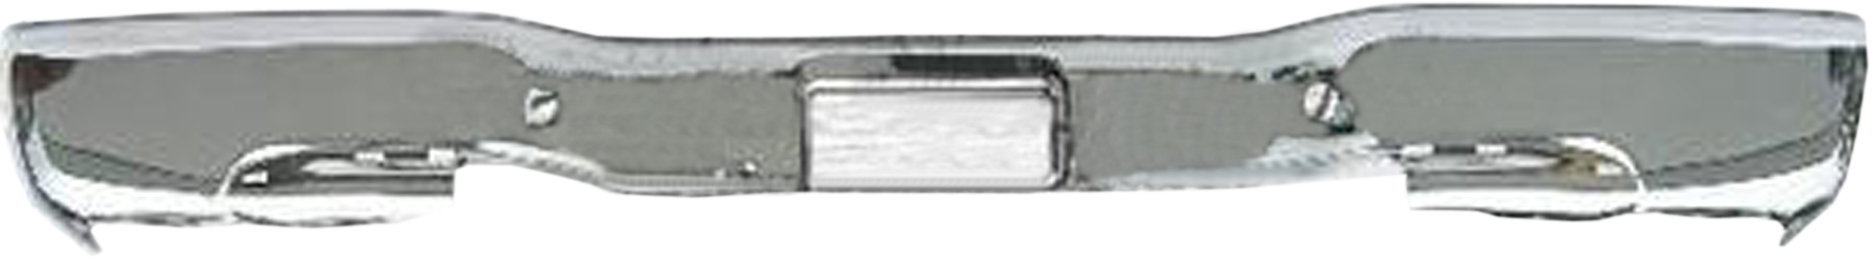 Aftermarket METAL REAR BUMPERS for GMC - SIERRA 2500, SIERRA 2500,99-04,Rear bumper face bar